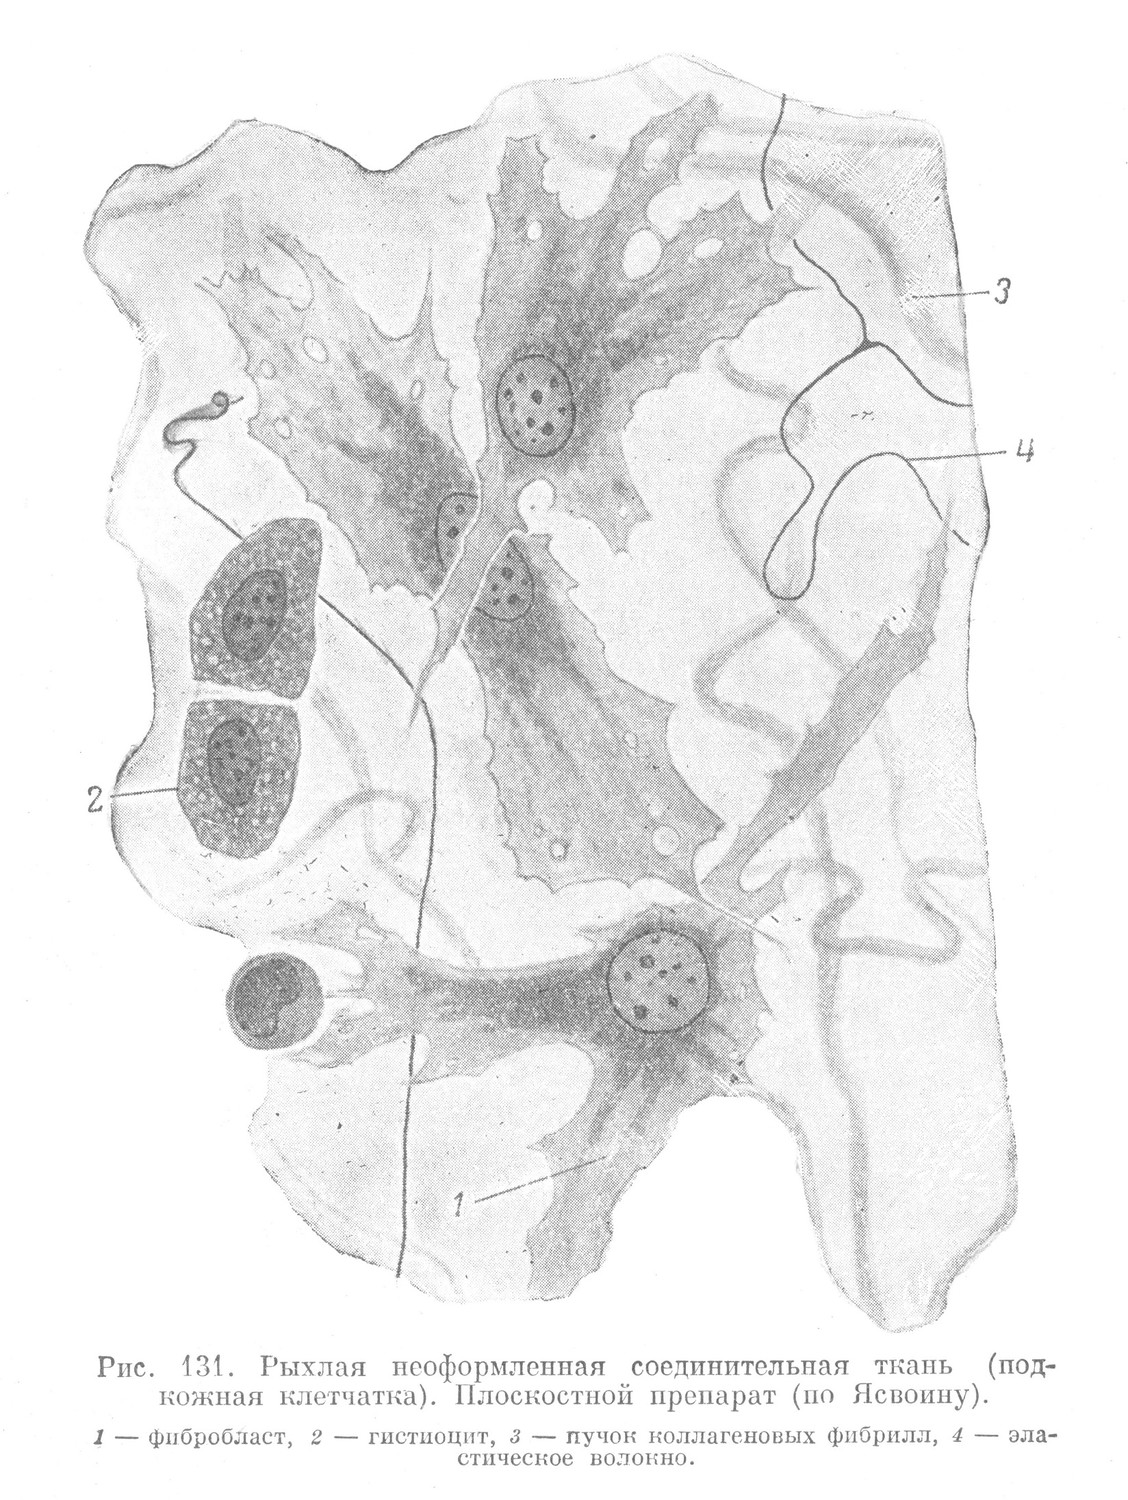 Рыхлая неоформленная соединительная ткань (подкожная клетчатка). 